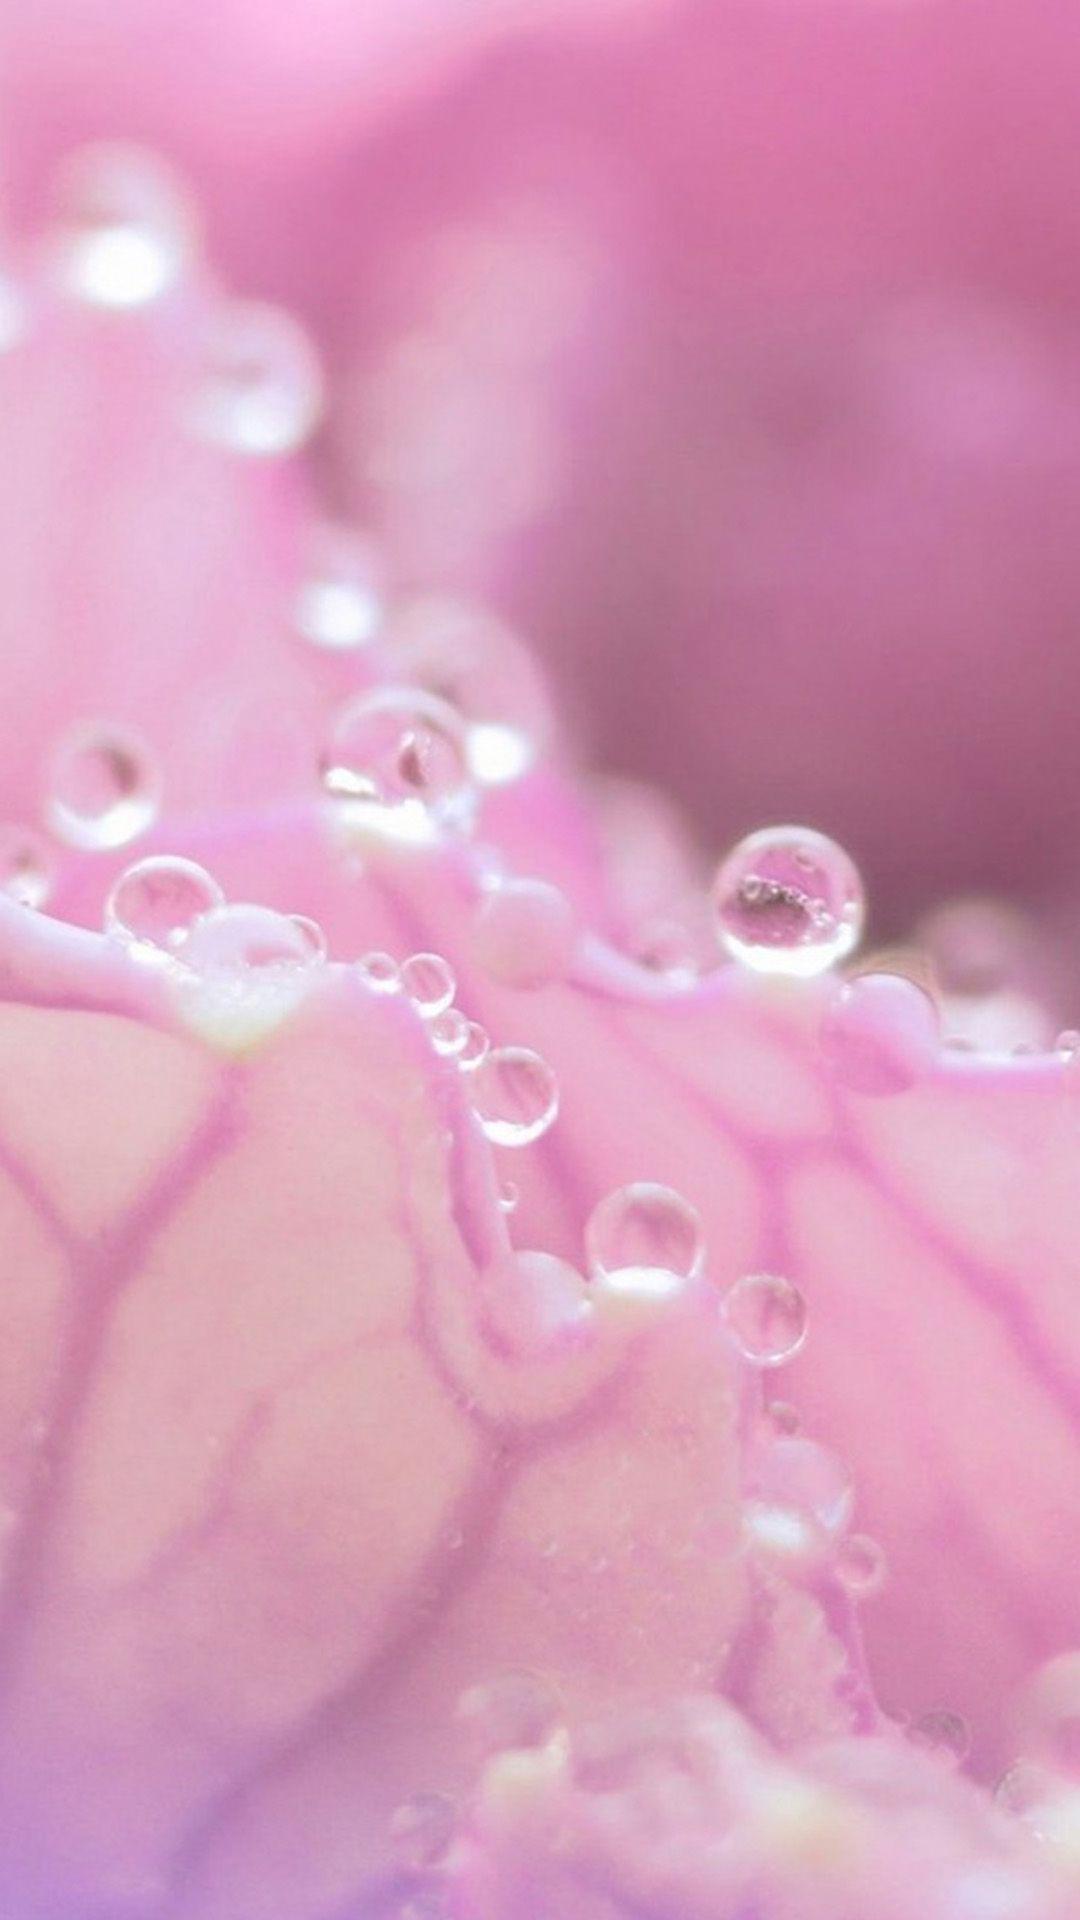 Pink water drops Samsung Galaxy Note 3 Wallpaper, Samsung Galaxy